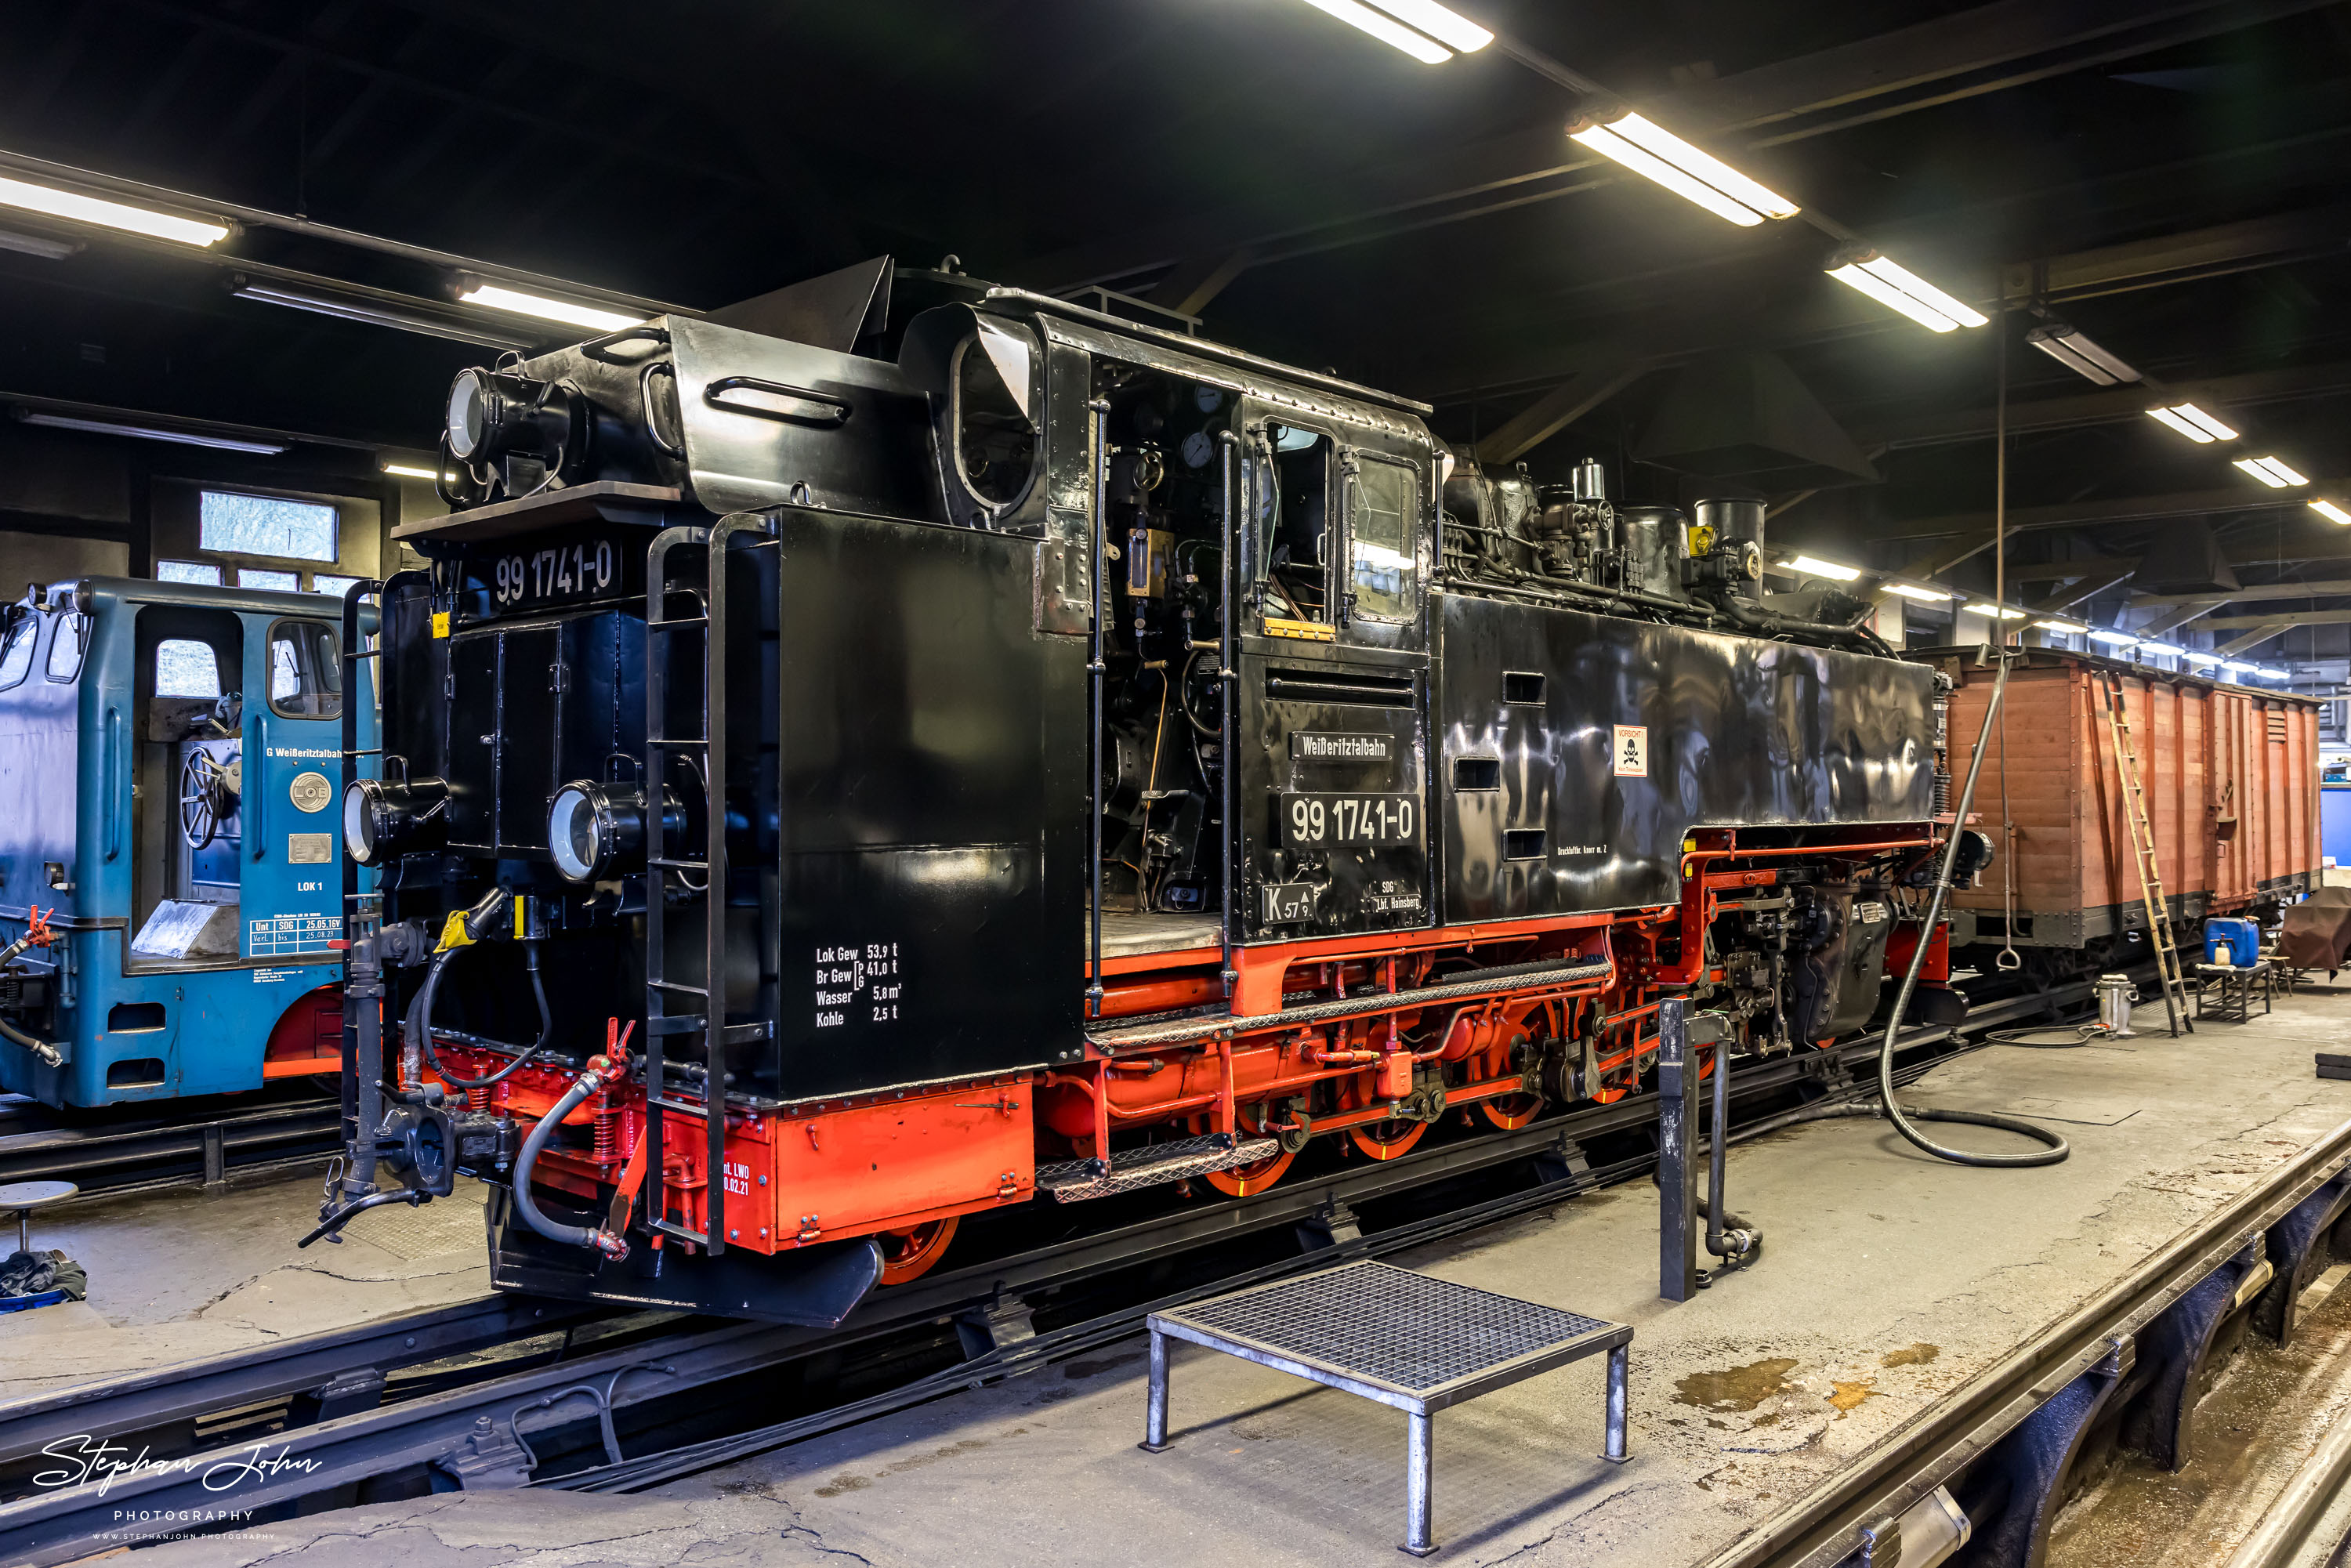 Lok 99 1741-0 steht im Lokschuppen in Freital-Hainsberg und wartet auf den Einsatz